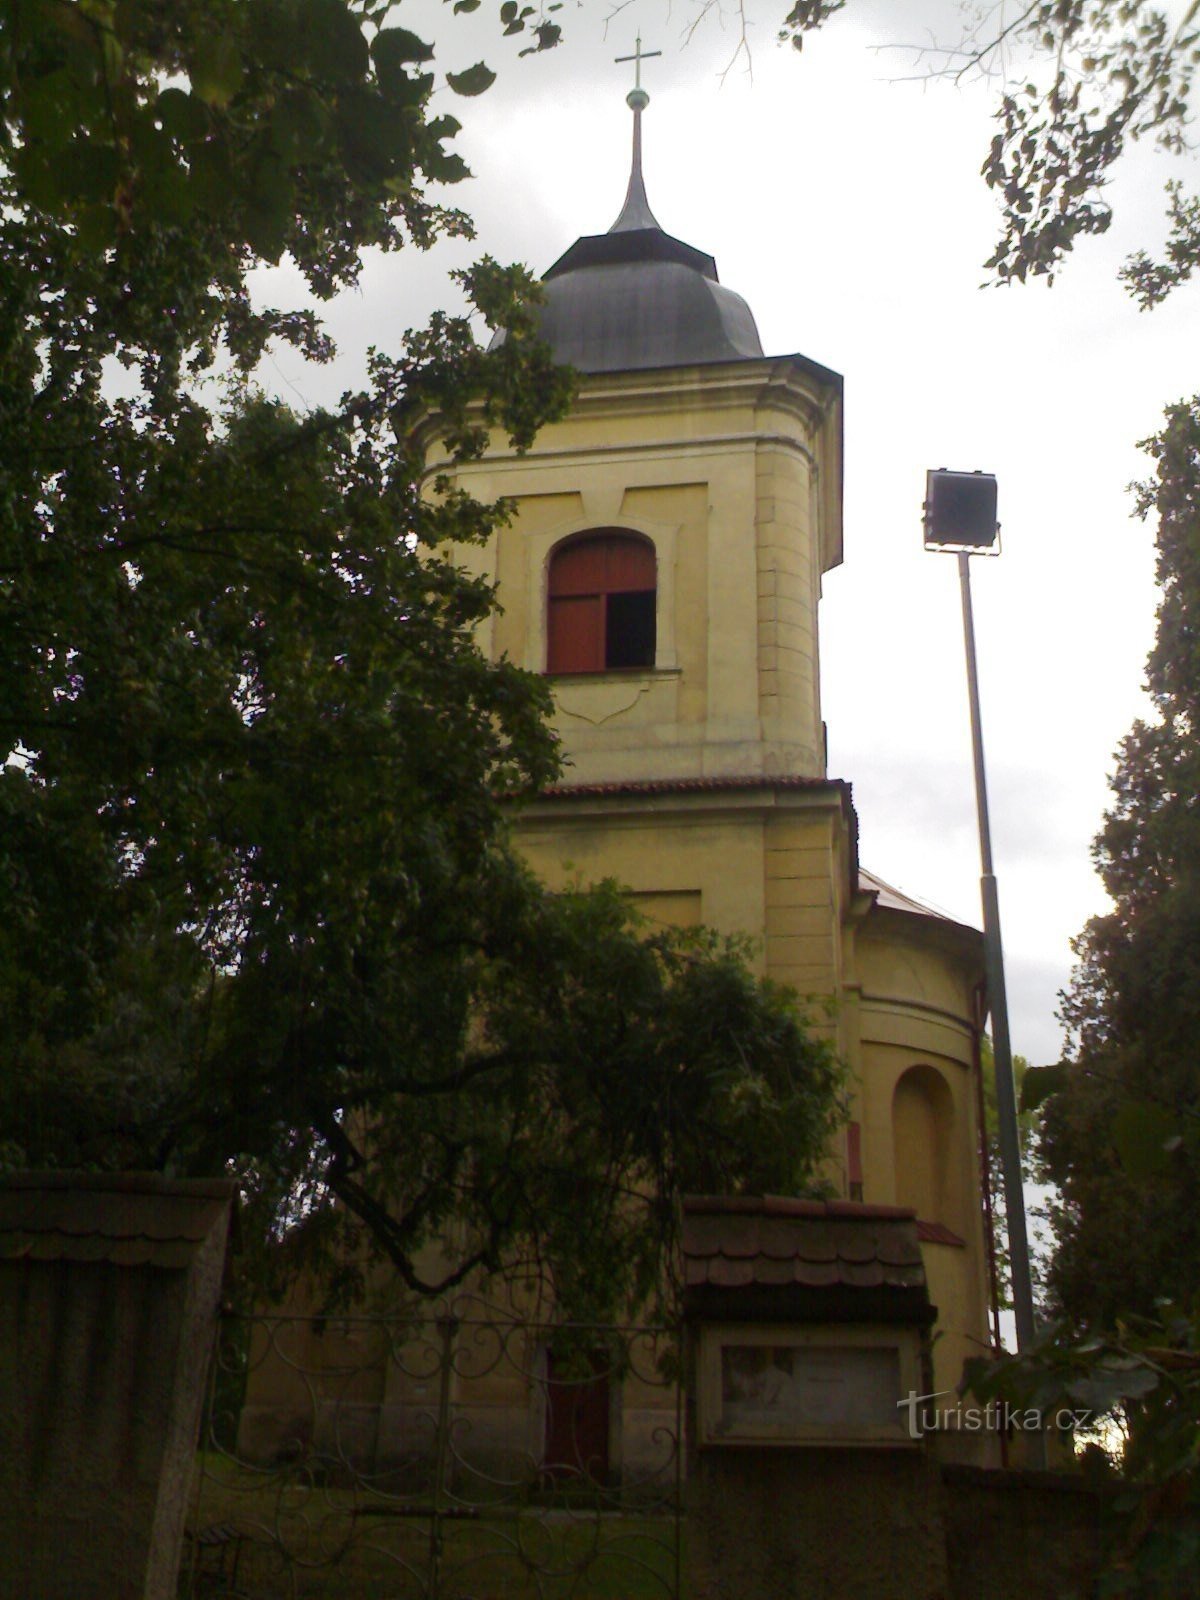 Vysoké Chvojno - Szent István-templom. Gothard